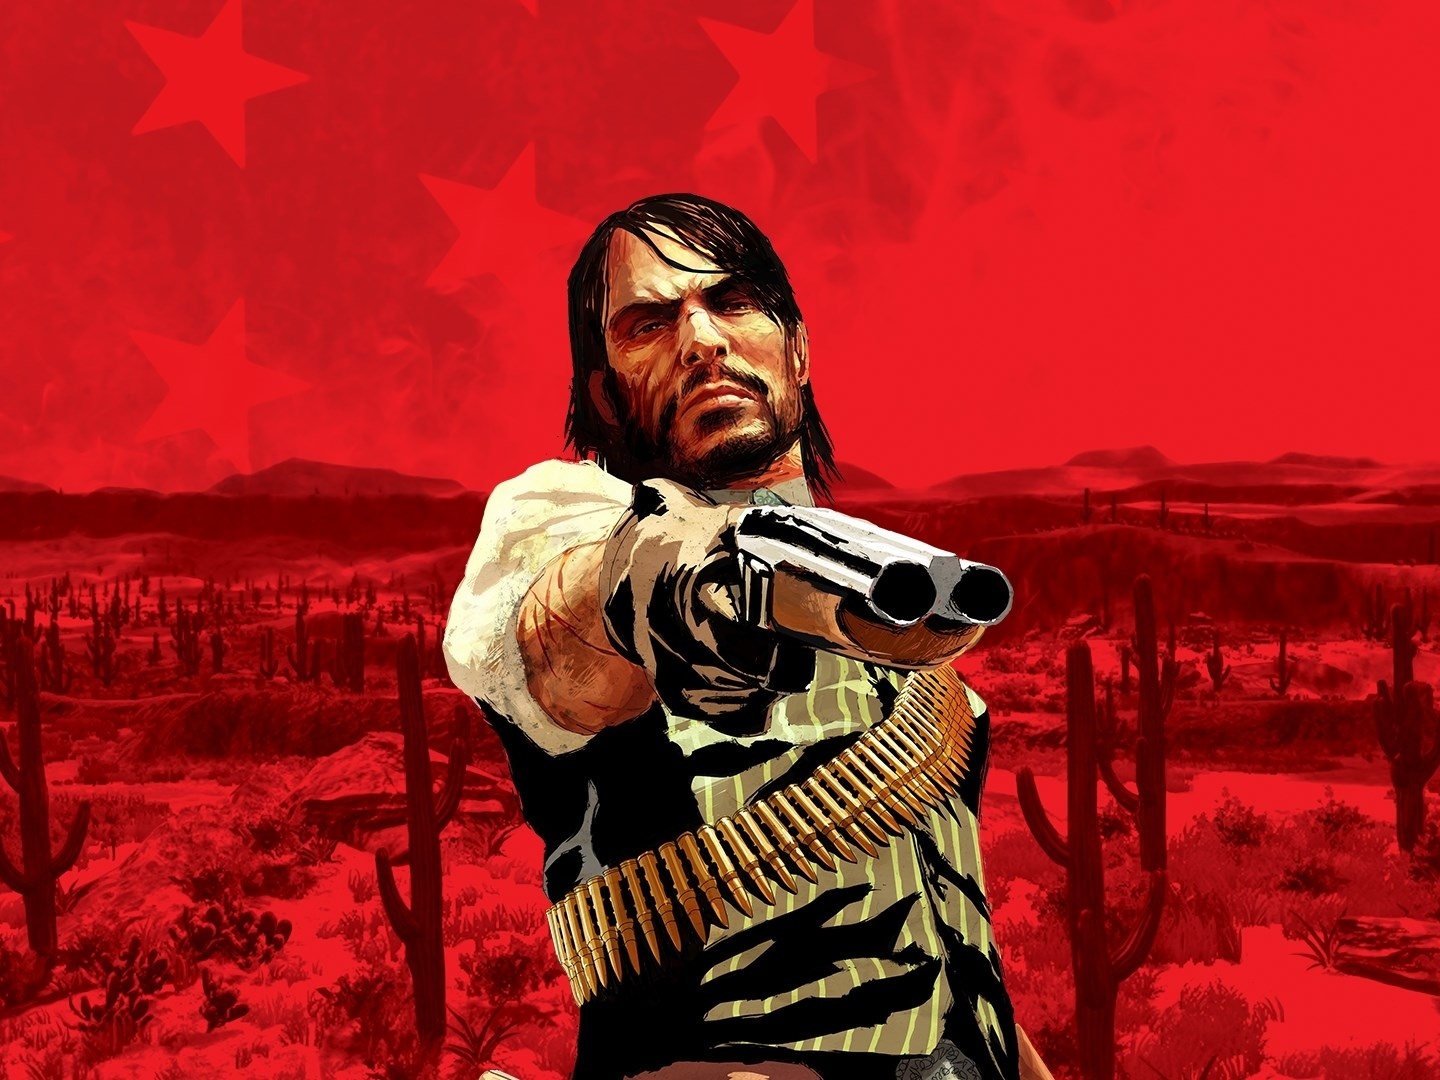 Confira os requisitos para Red Dead Redemption 2 no PC! - Aficionados